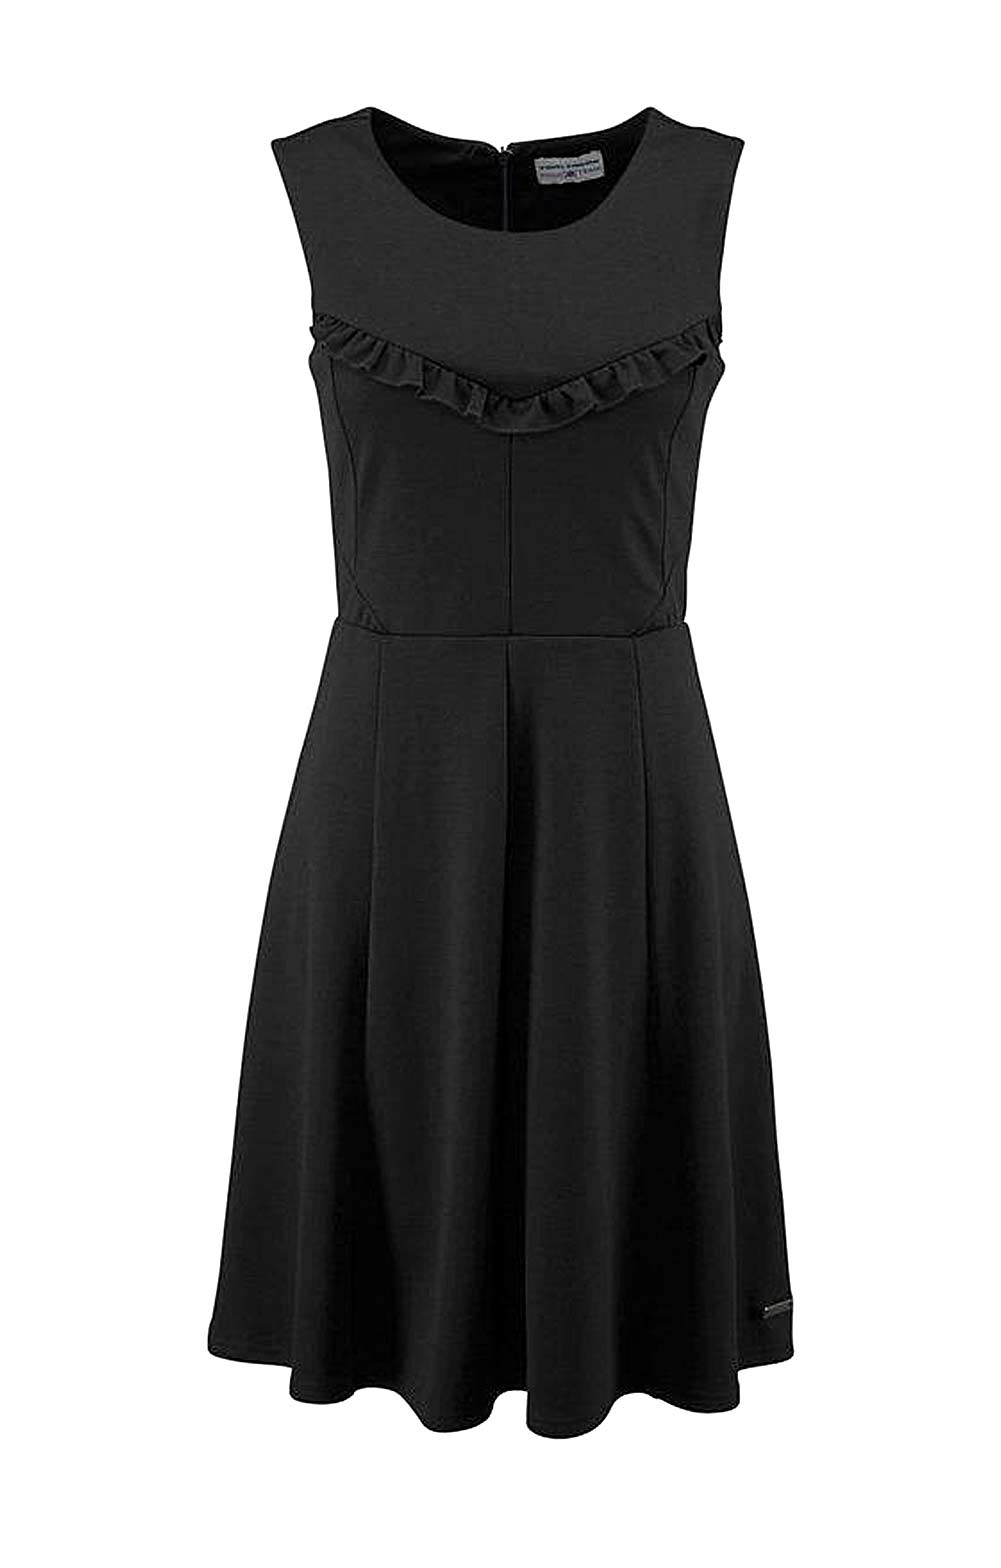 Tom Tailor Damen Marken-Kleid mit Rüschen, schwarz